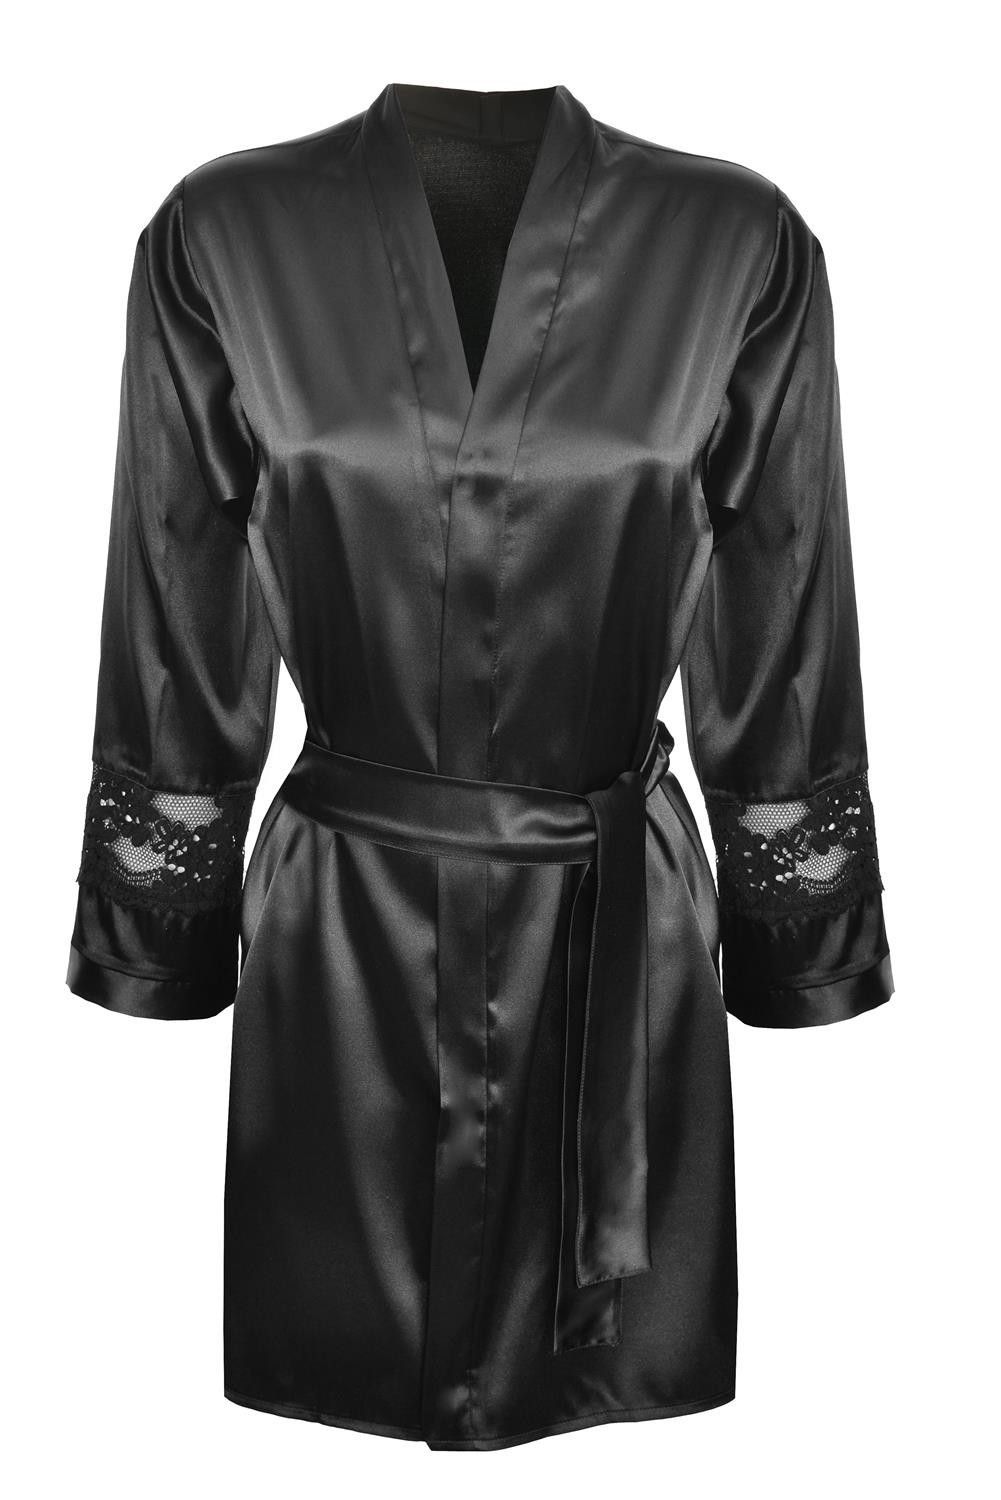 DKaren Housecoat Betty Black 2XL černá